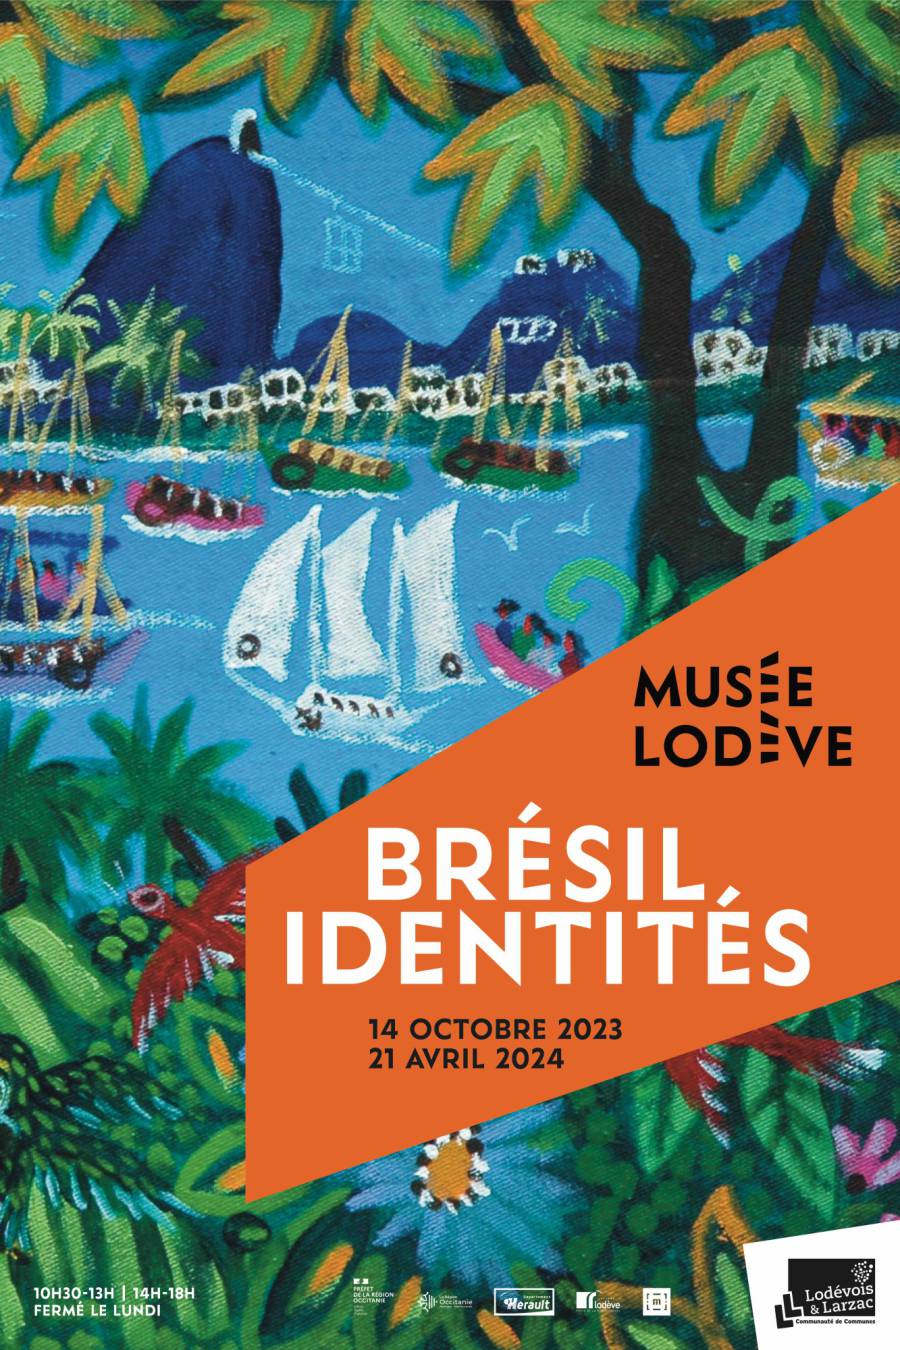 Lodève - Exposition Brésil, Identités présentée au Musée de Lodève du 14 octobre 2023 au 21 avril 2024